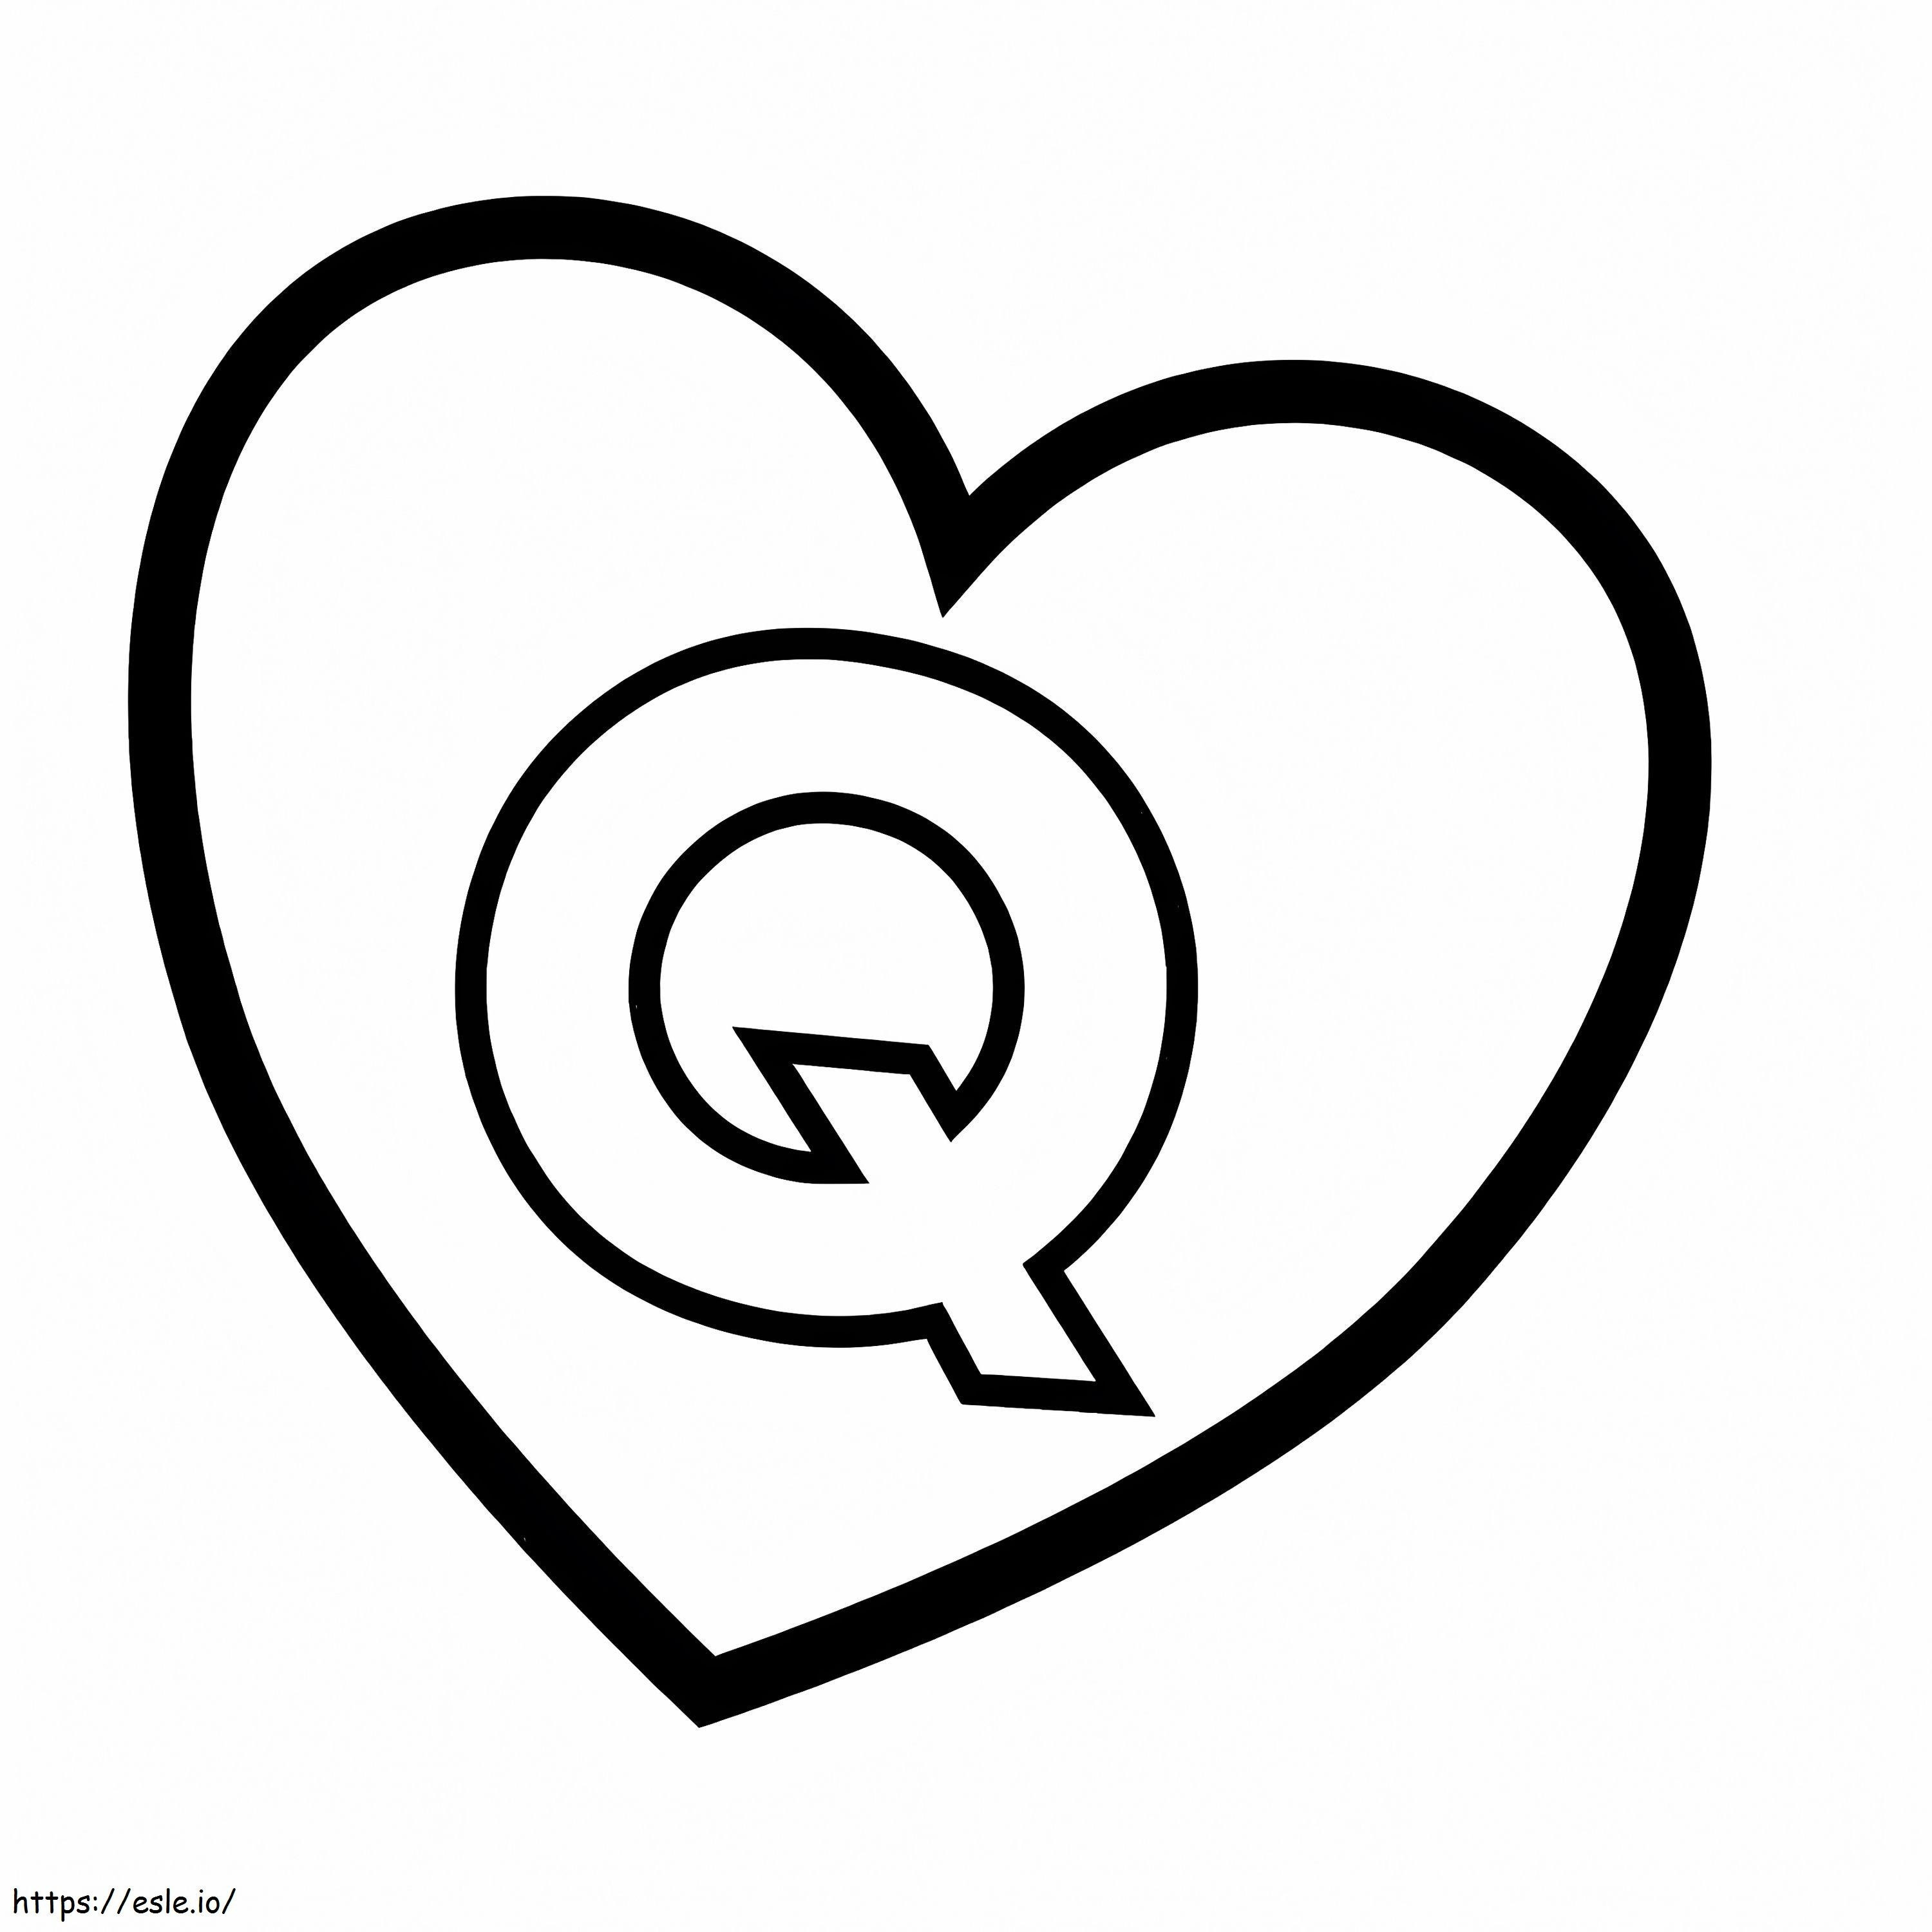 Lettera Q nel cuore da colorare